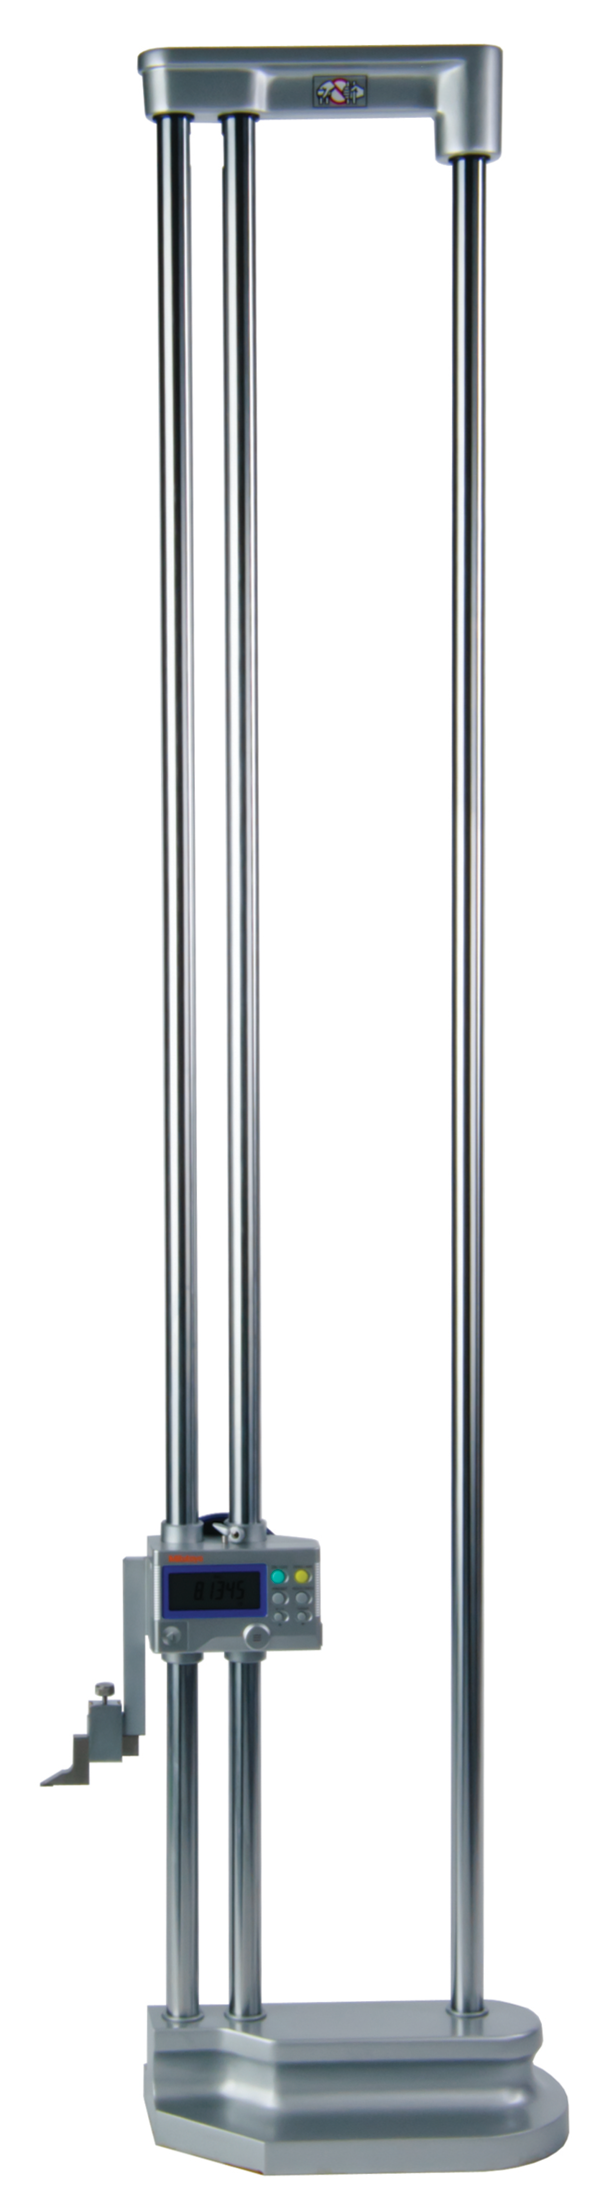 Digital Height Gauge Double Column 0-40"/1000mm, Inch/Metric 192-633-10